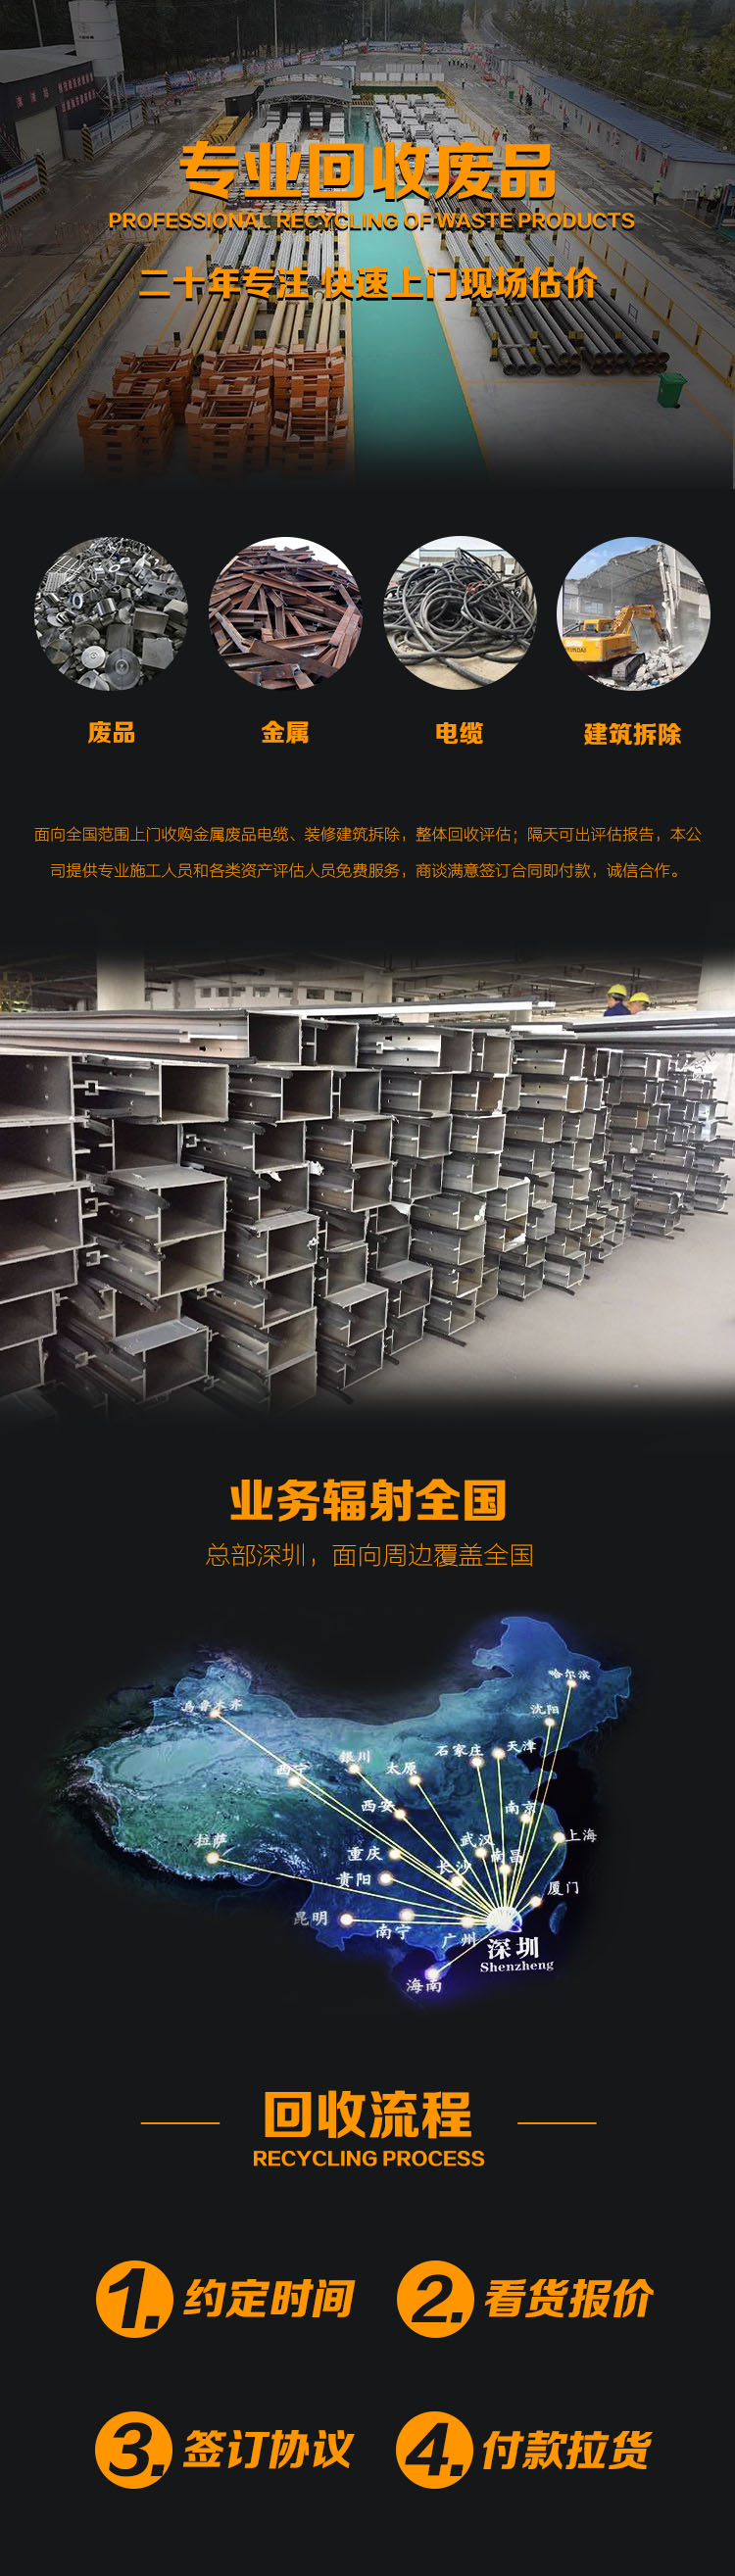 深圳回收废品工厂废旧金属回收